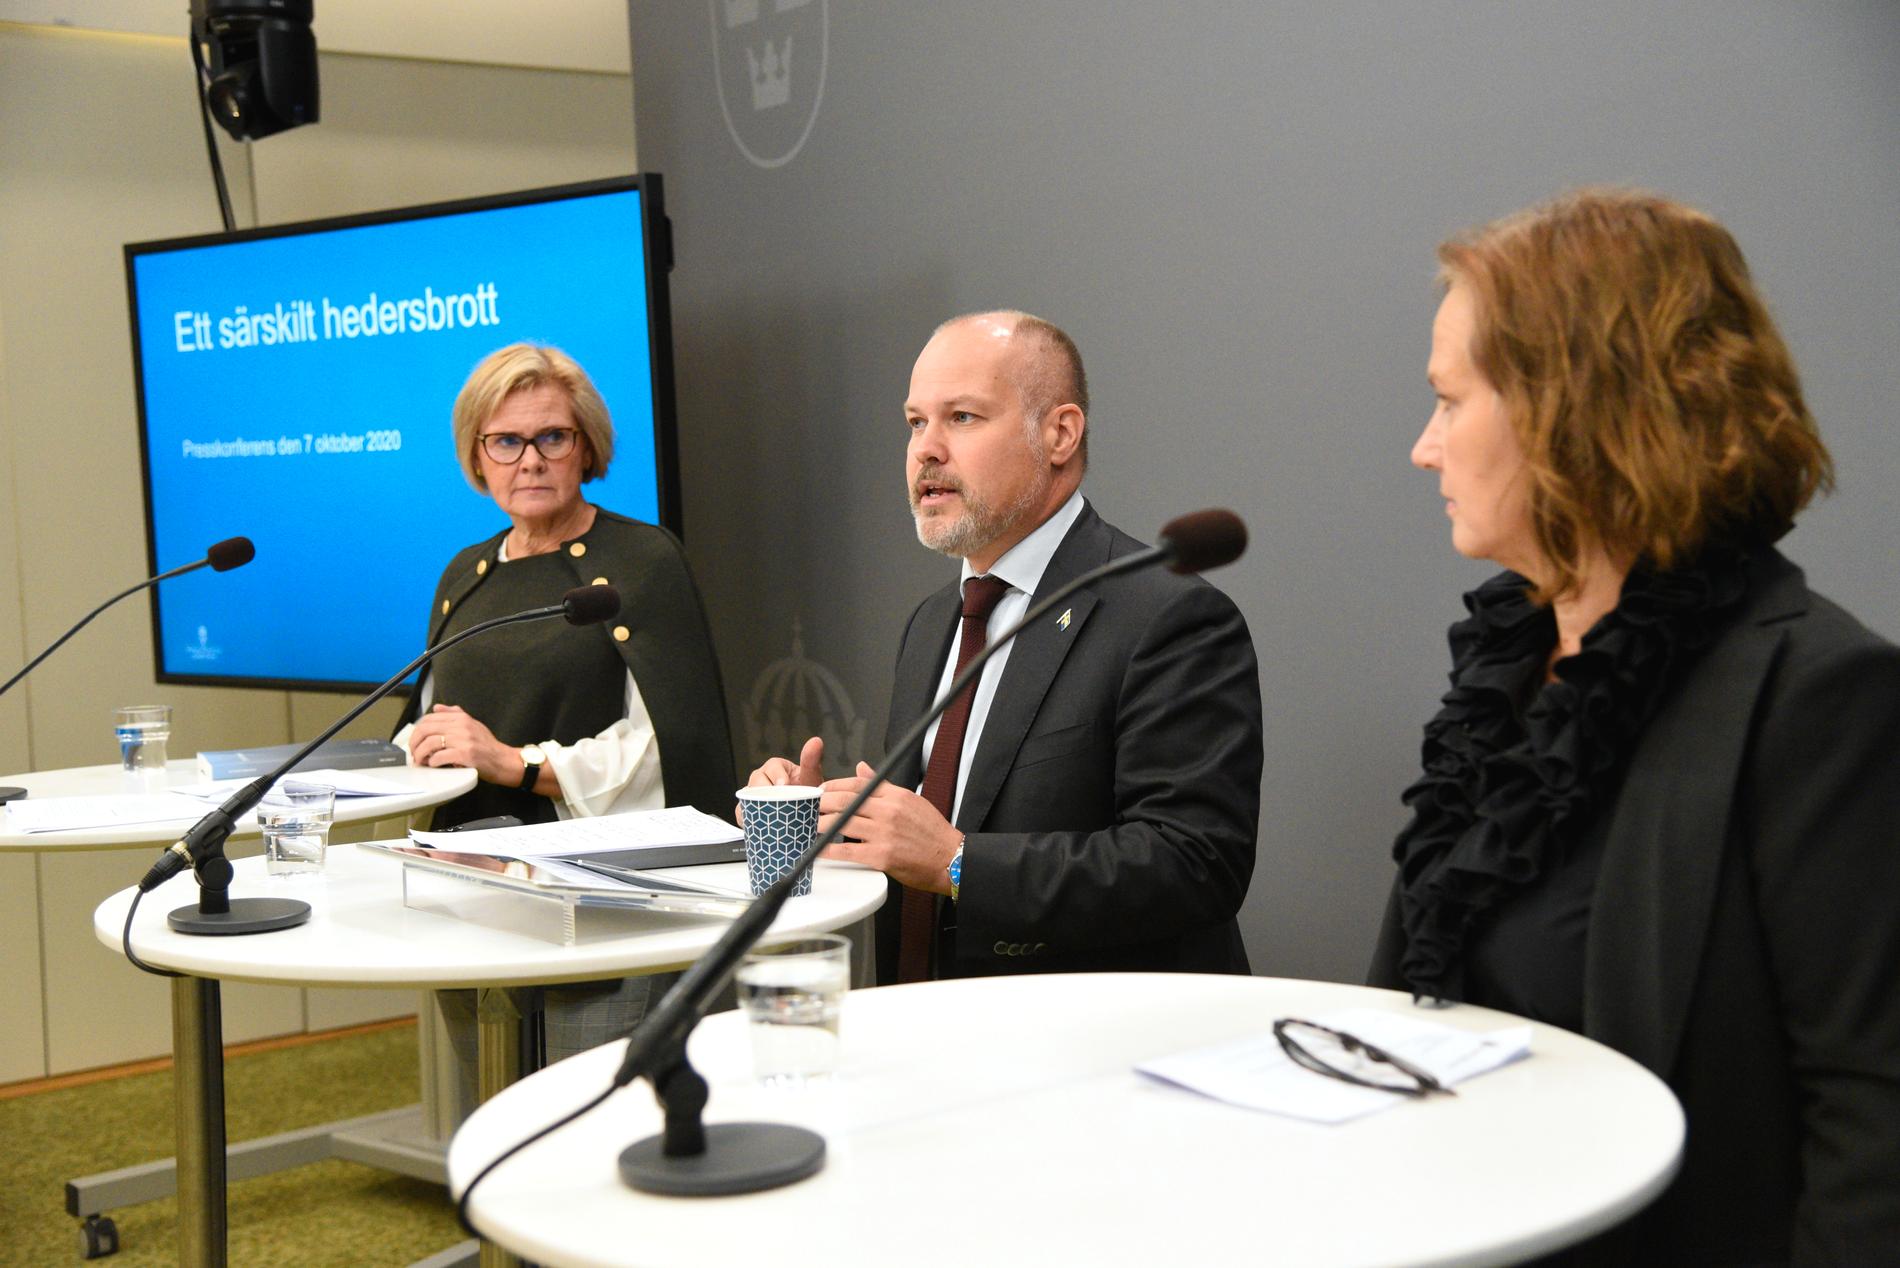 Justitieminister Morgan Johansson tog emot hedersbrottsutredningen av riksåklagaren Petra Lundh till vänster i bild. Till höger Juno Blom, Liberalernas partisekreterare.